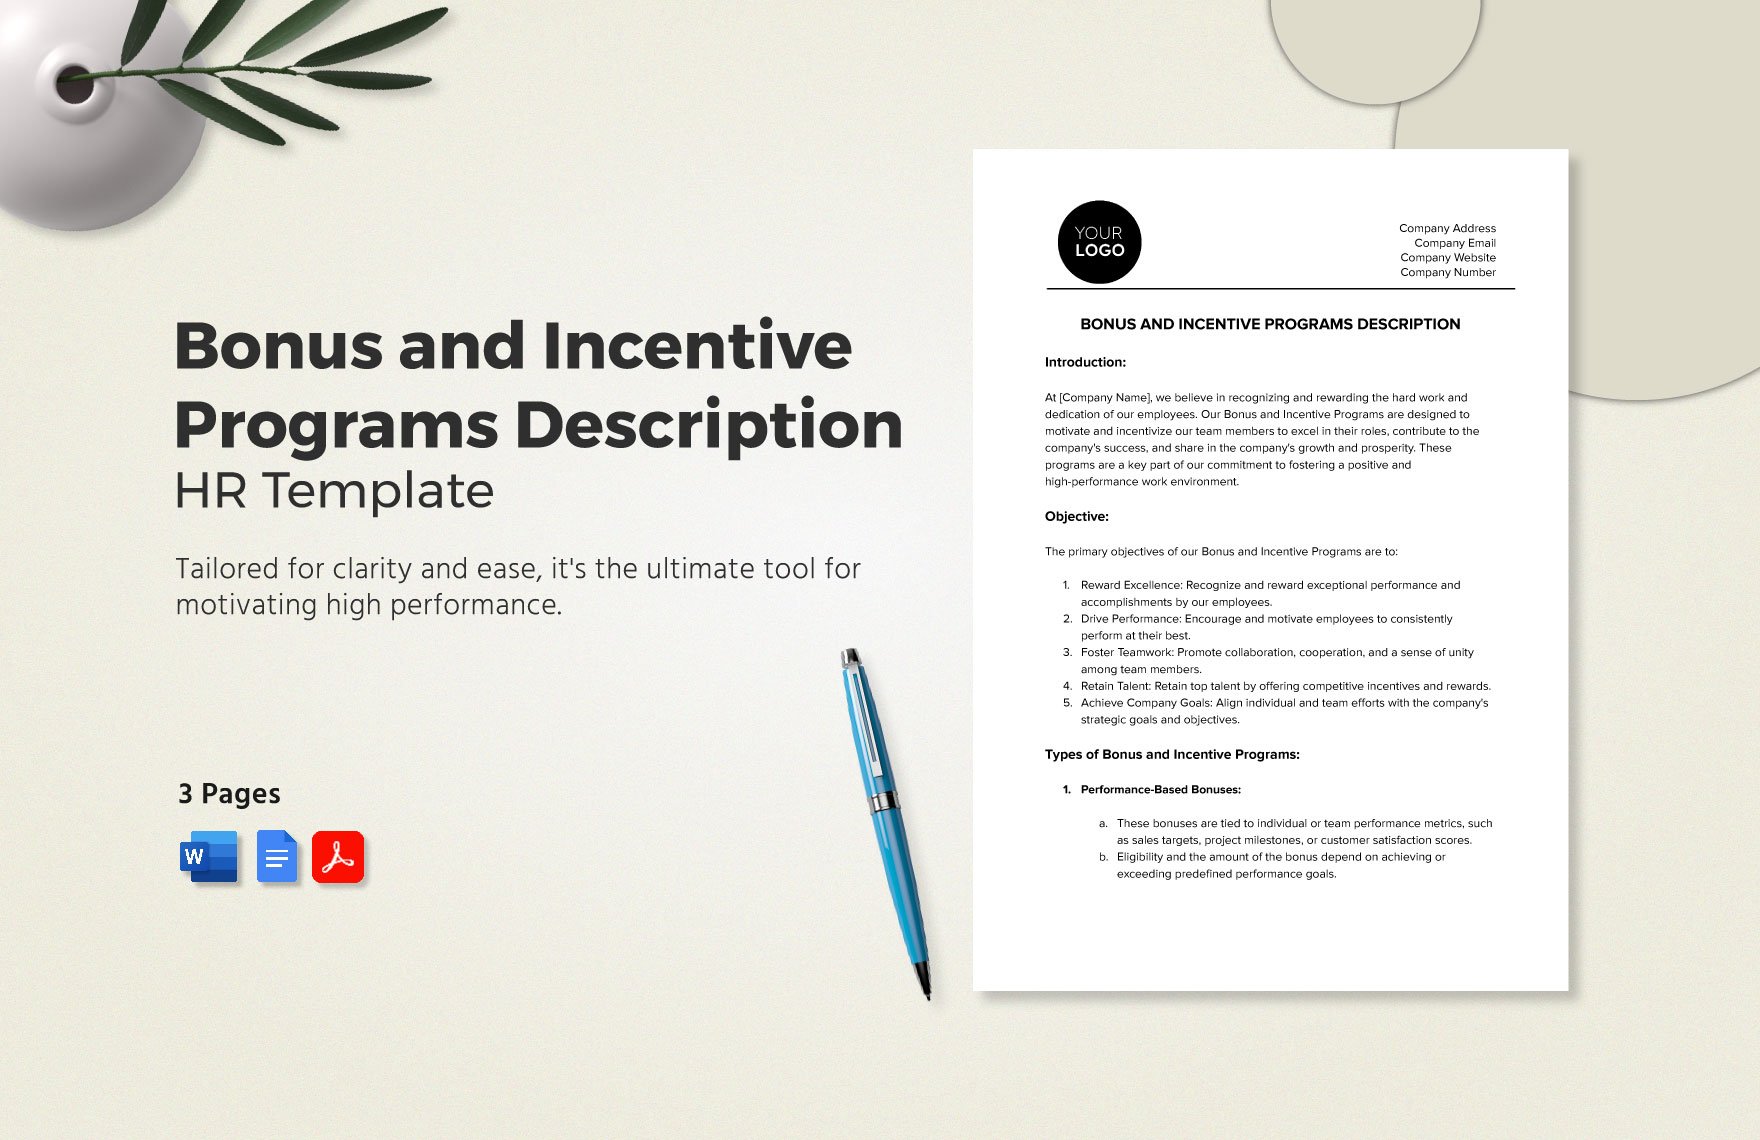 Bonus and Incentive Programs Description HR Template